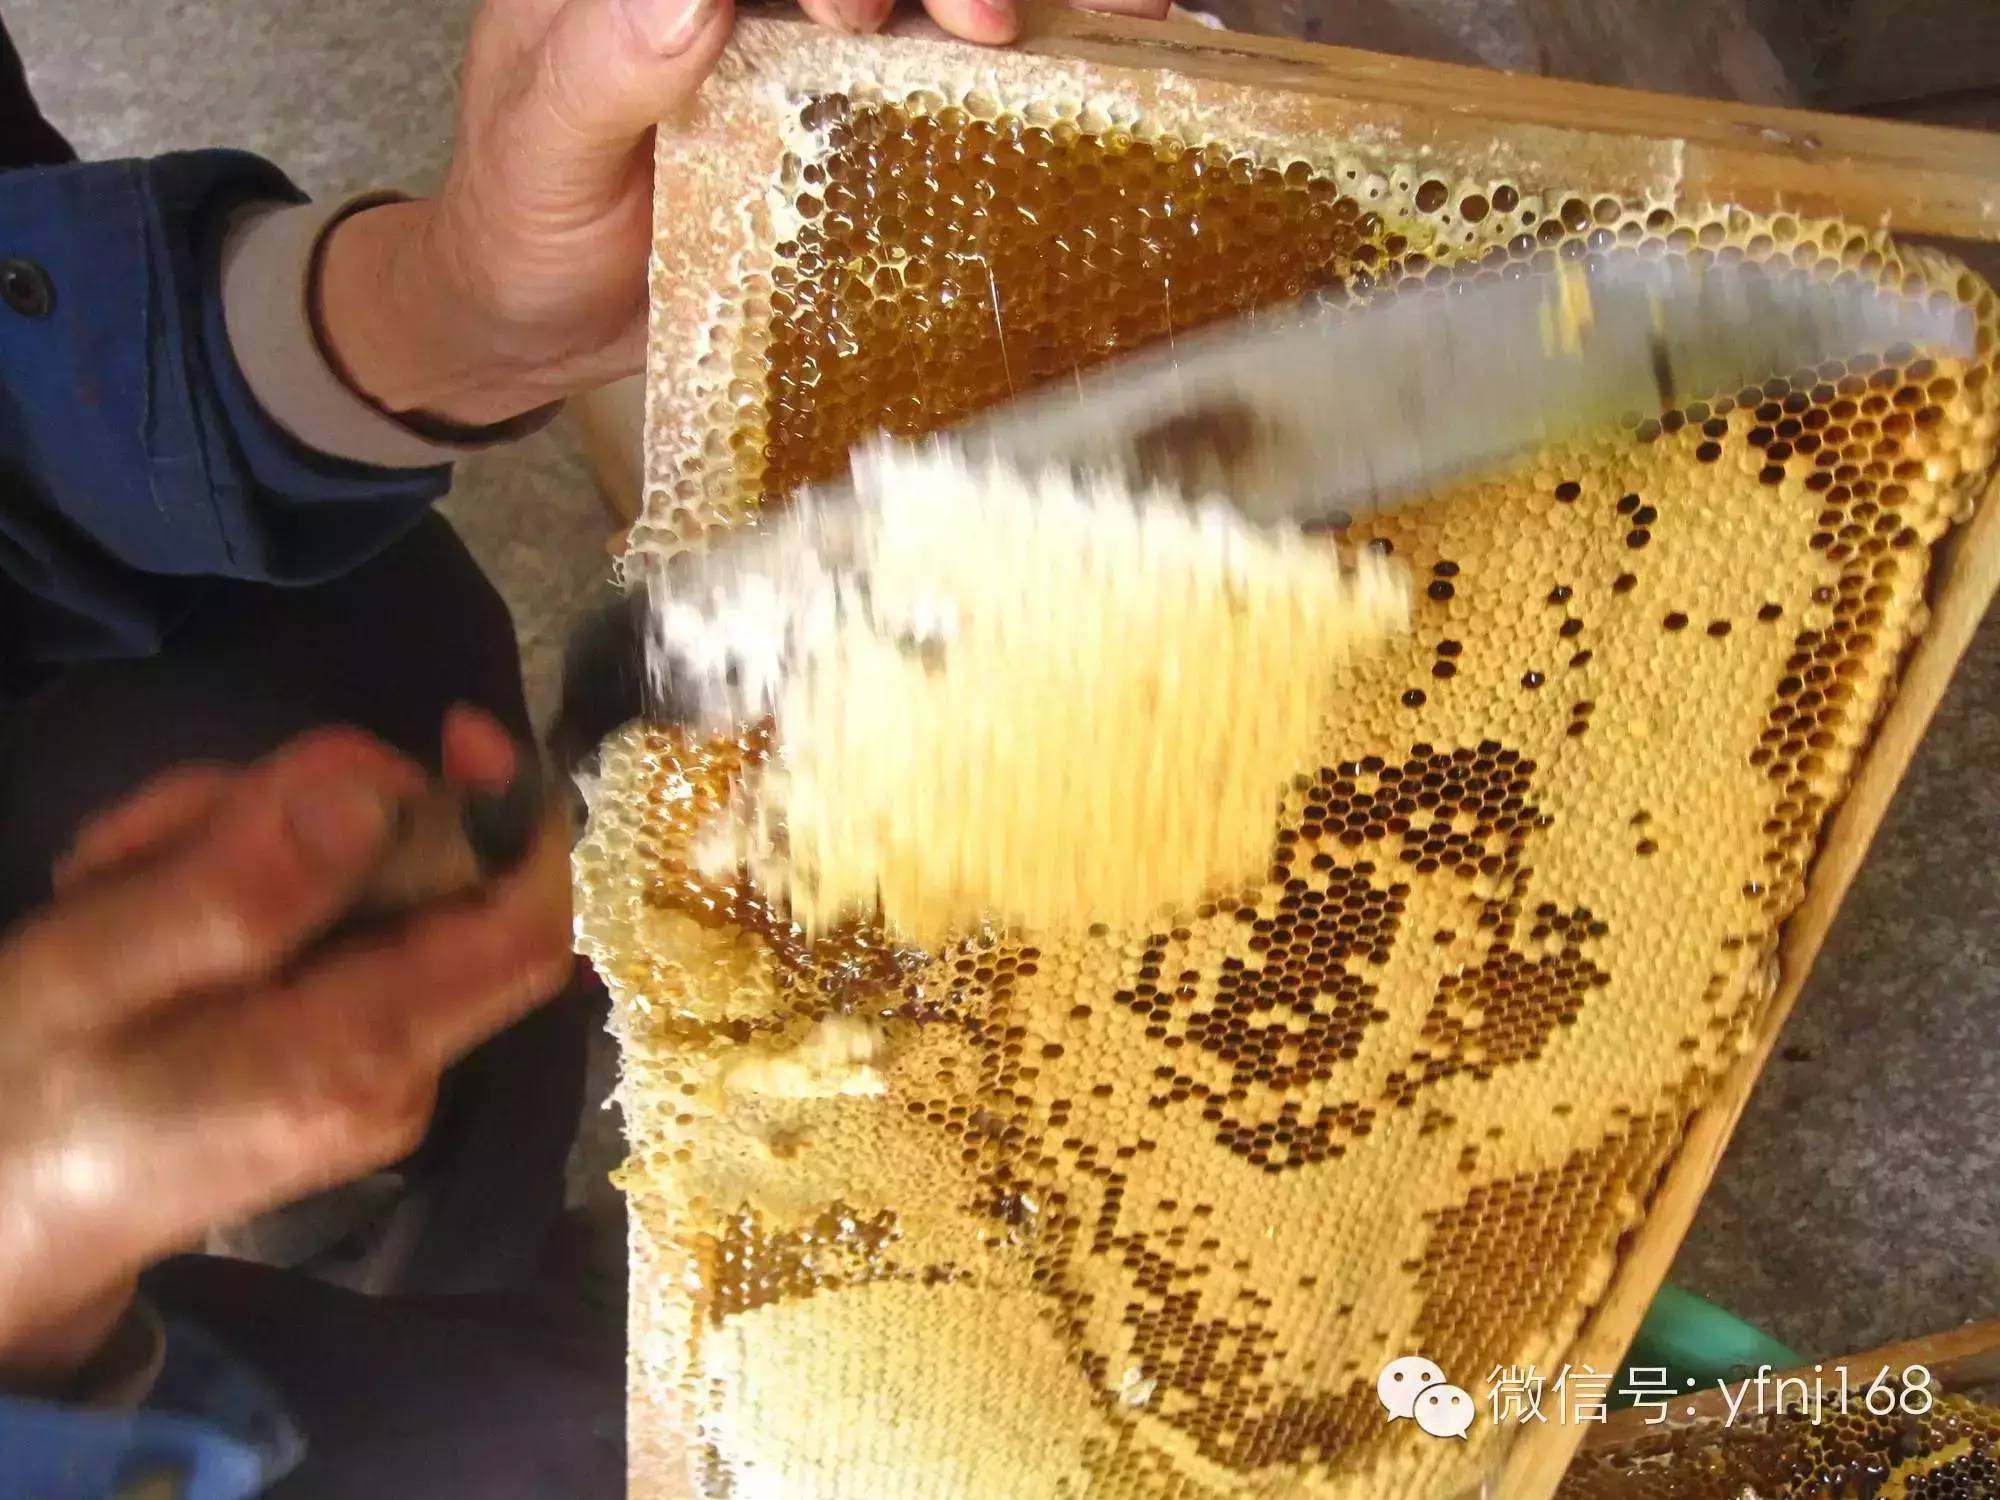 蜂蜜睡眠 玫瑰蜂蜜 蜂蜜不能和什么一起吃 如何制作蜂蜜柠檬水 天然野生蜂蜜